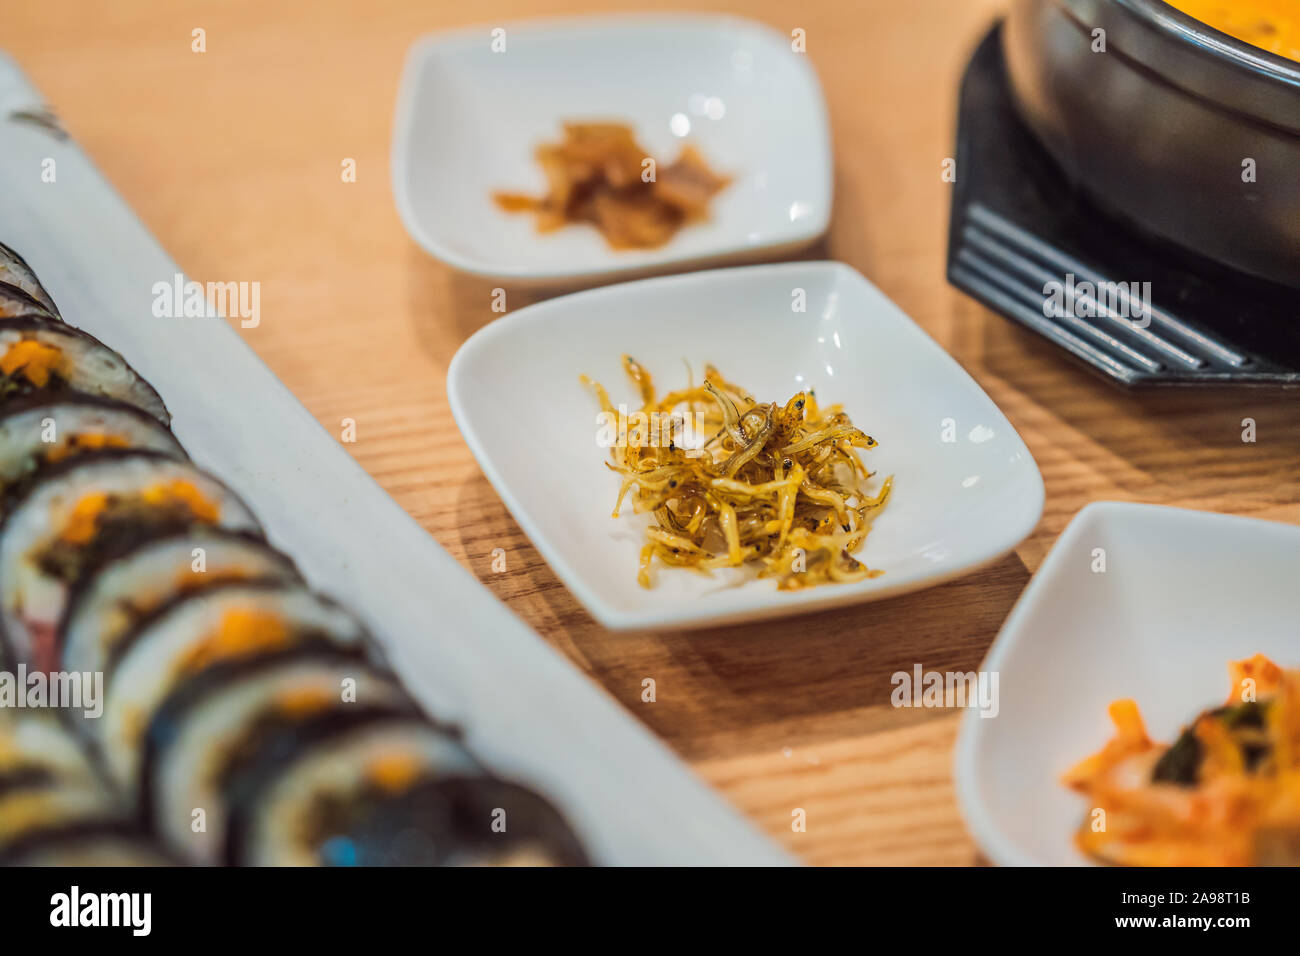 ramen noodles and gimbap meal national korean food Stock Photo